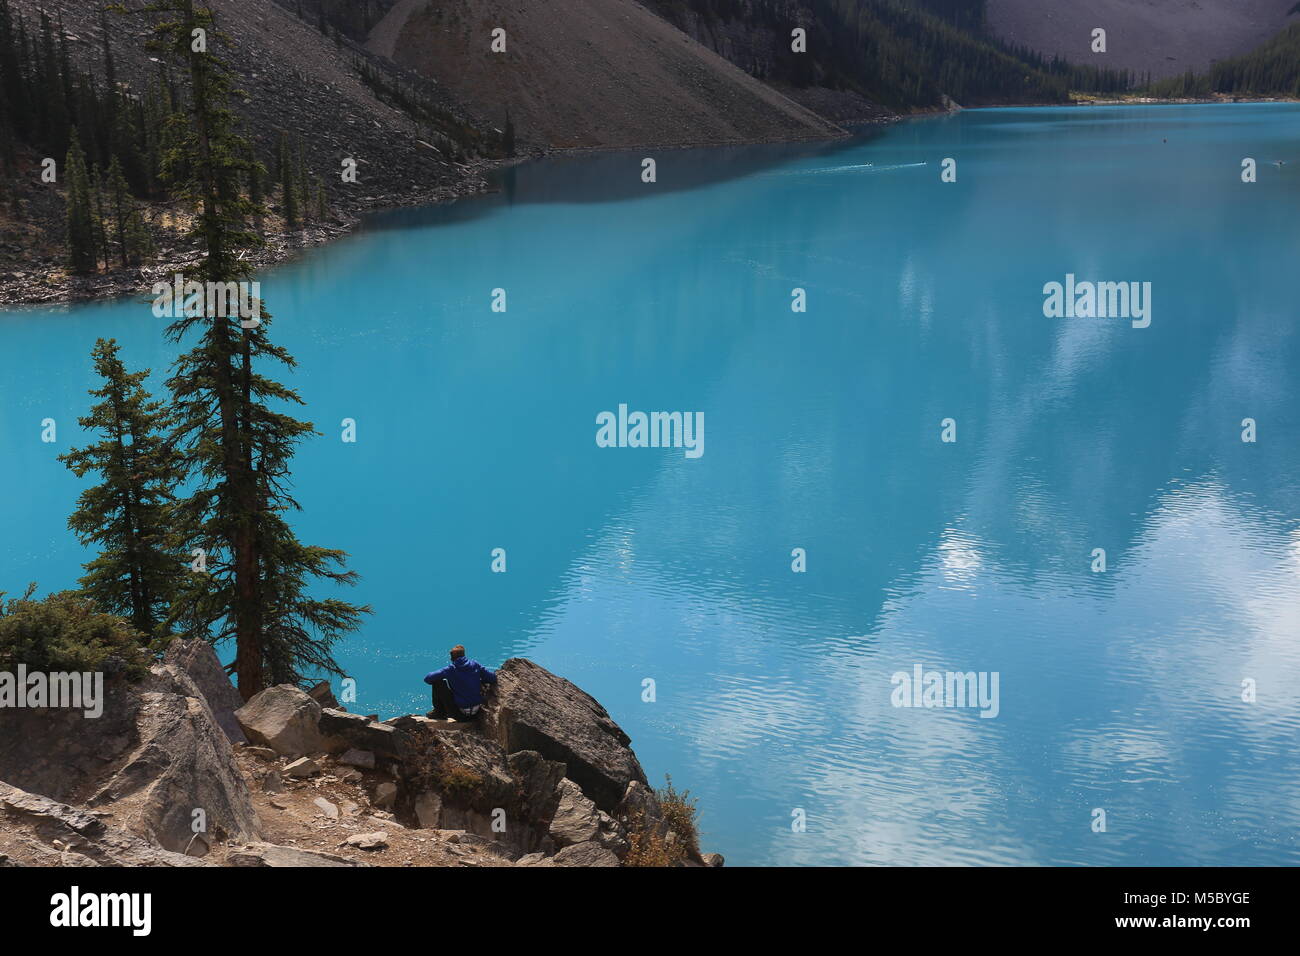 Le lac Moraine dans la vallée des Dix-Pics Banff National Park Alberta Canada Banque D'Images